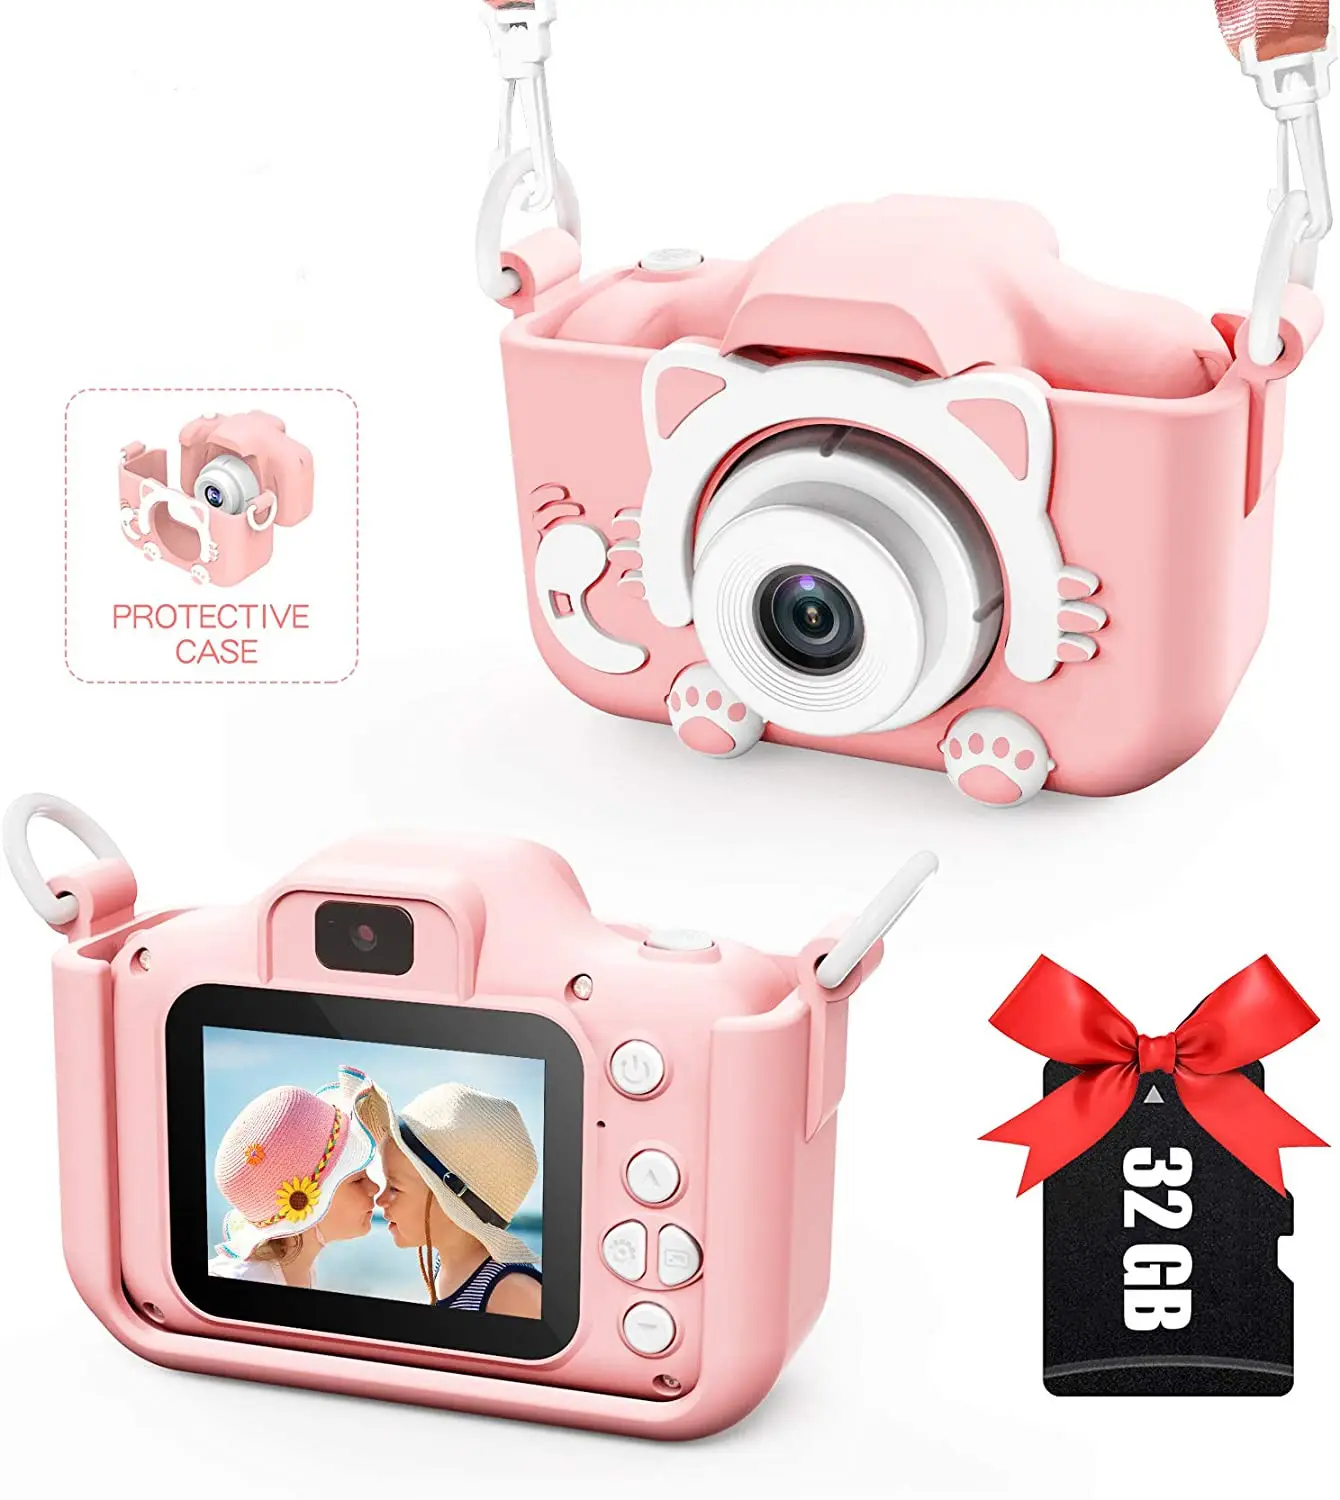 Cute Cartoon Kids Instant Camera Children Fun Digital Camera Built-In Games 2.4 Inch 1200W Kids Photo Camera